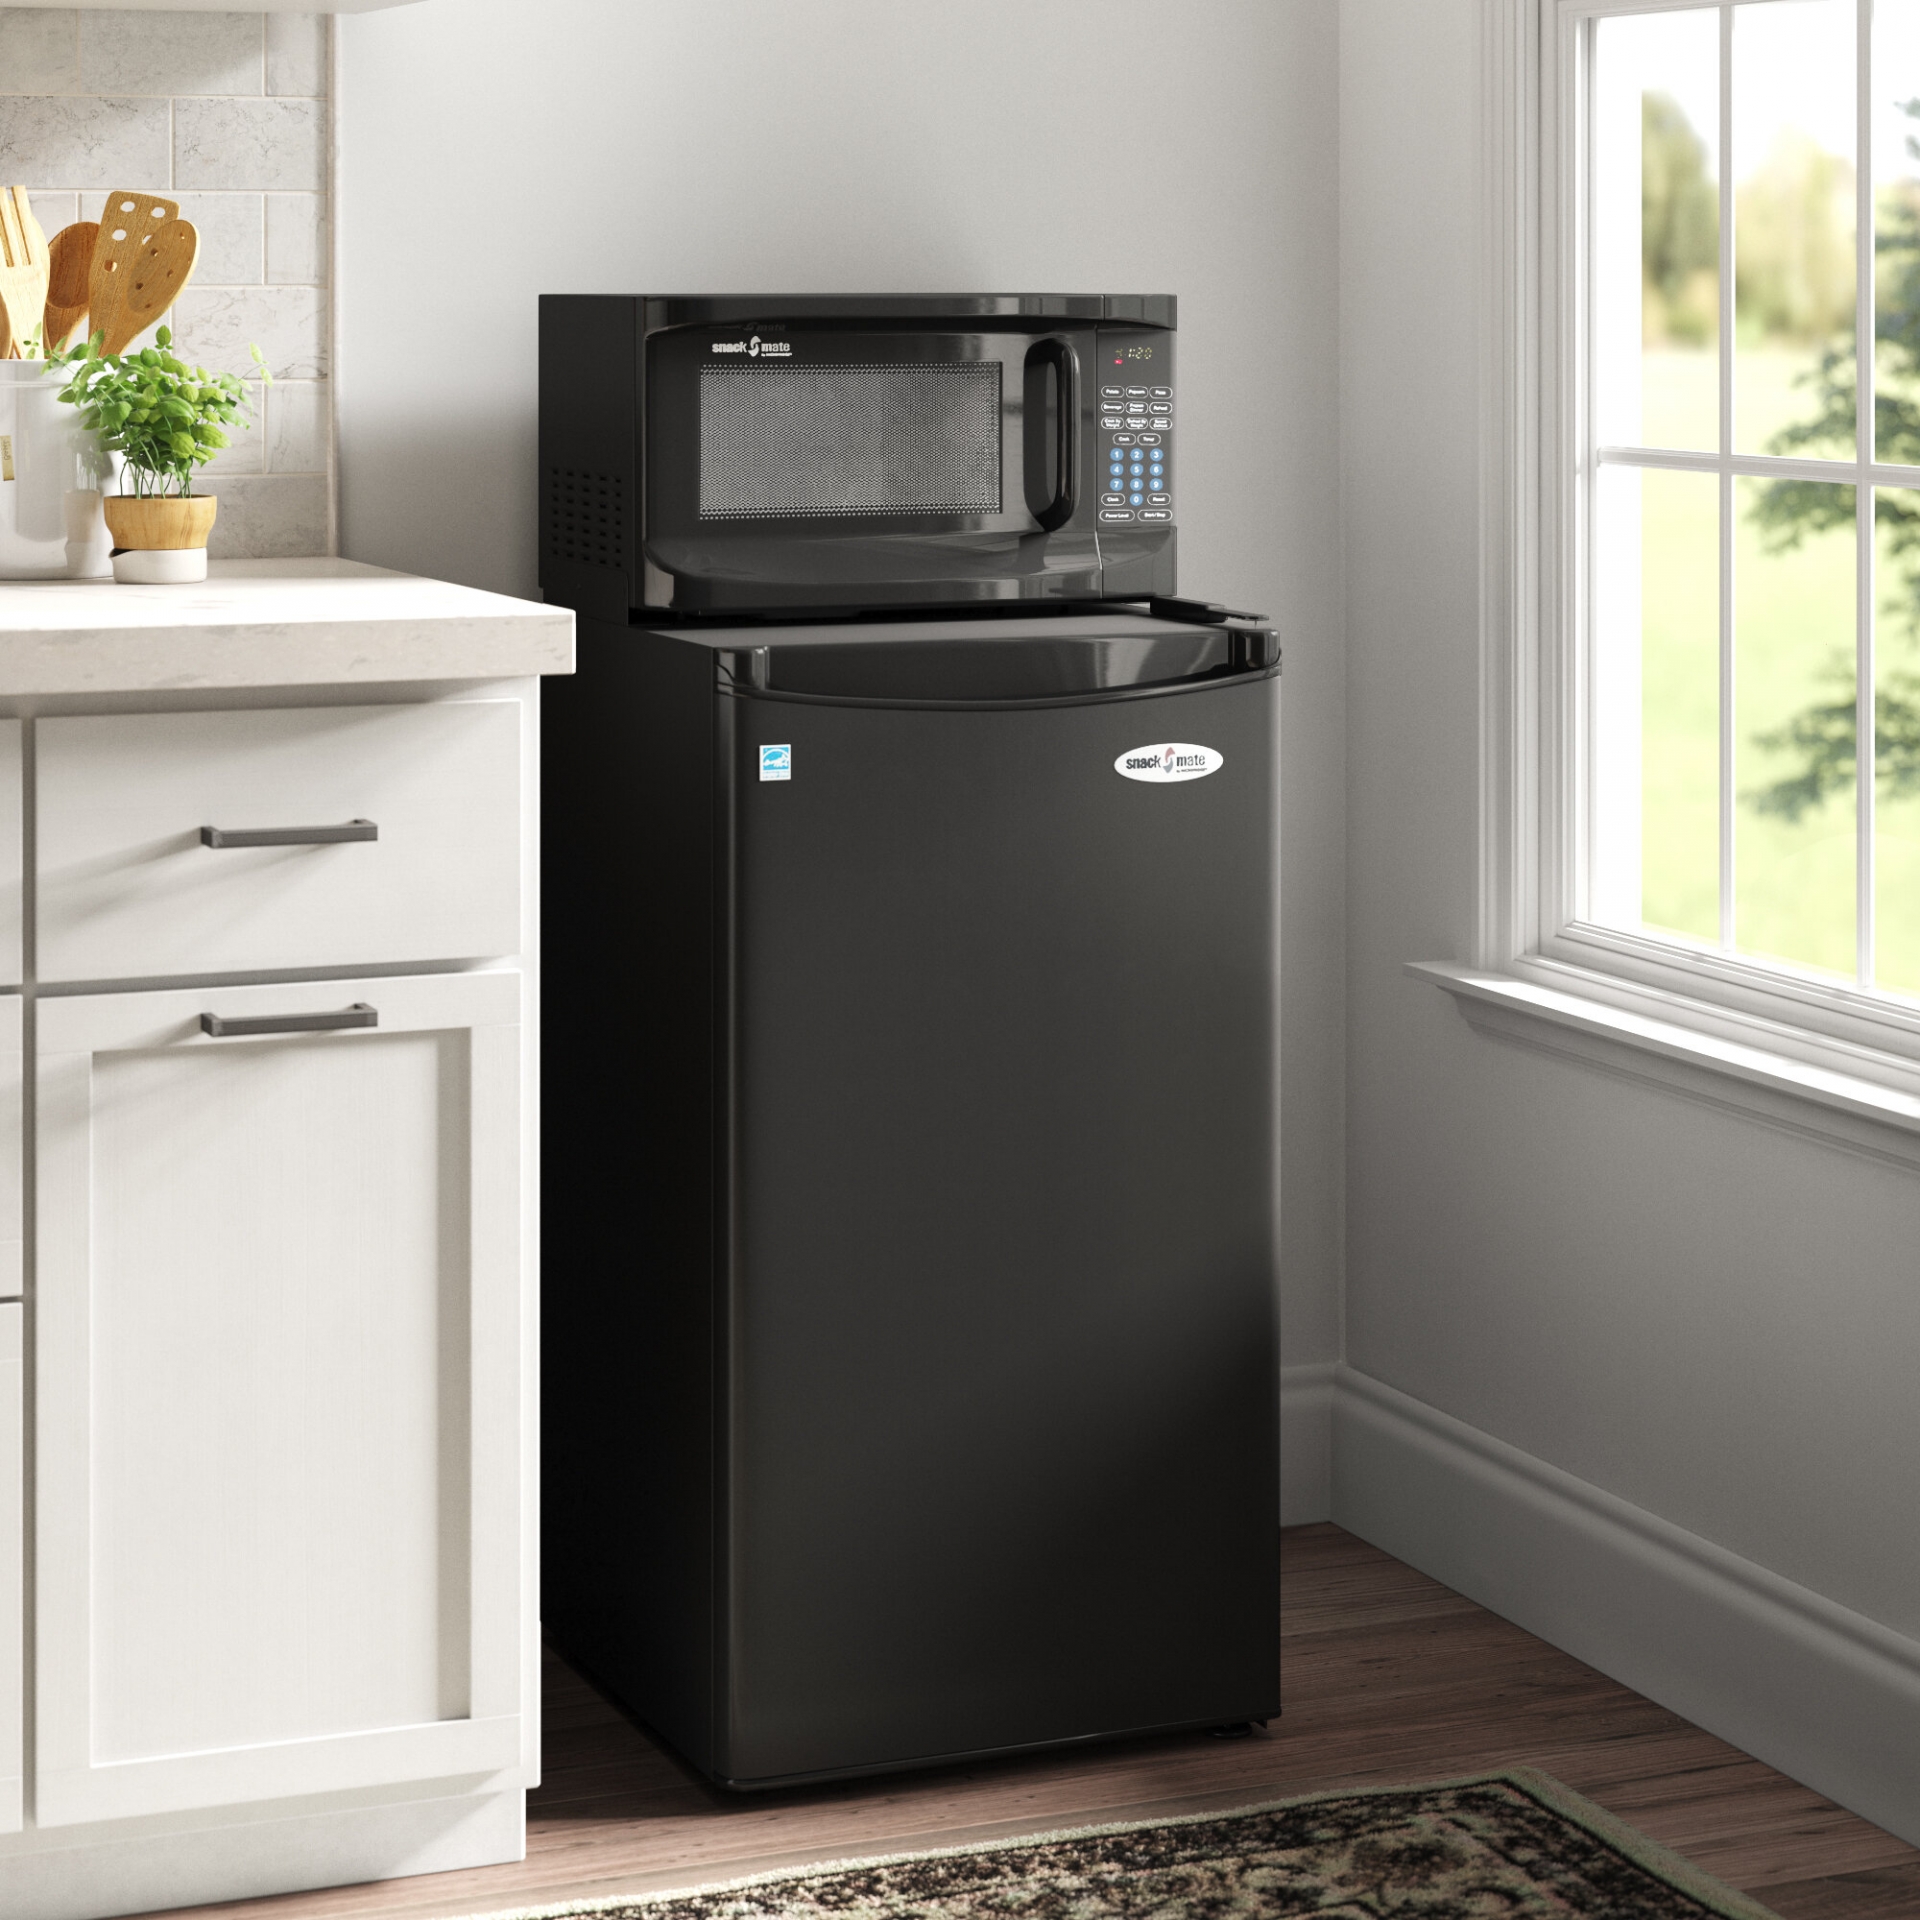 Đặt các thiết bị điện trên đầu tủ lạnh sẽ phát ra nhiệt lượng ảnh hưởng đến quá trình tản nhiệt cũng như hiệu quả làm lạnh của thiết bị.